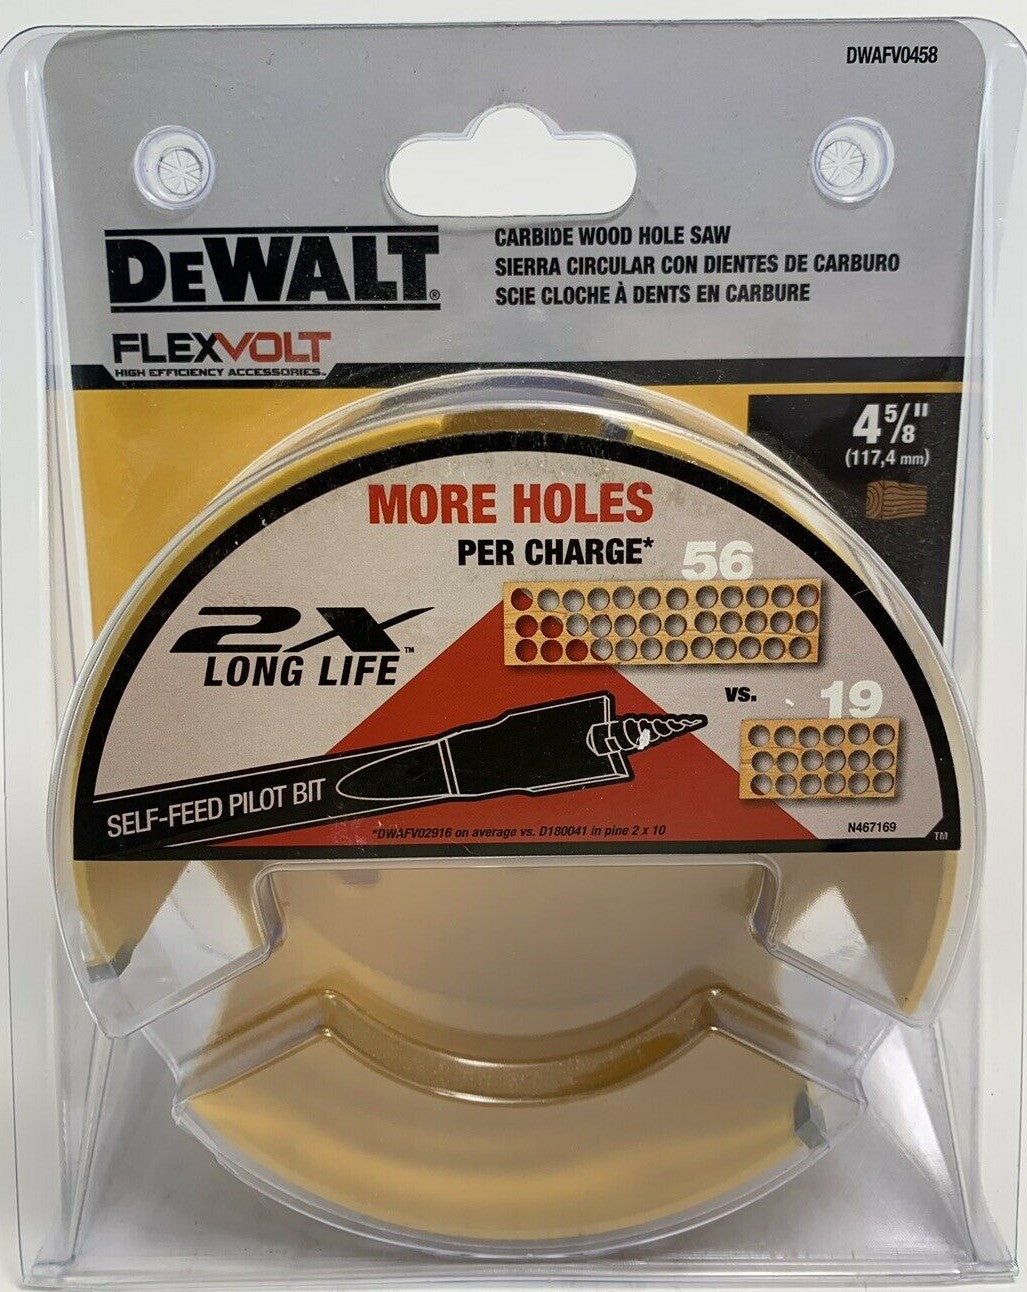 DeWalt DWAFV0458 Flex Volt 4-5/8" Carbide Wood Hole Saw